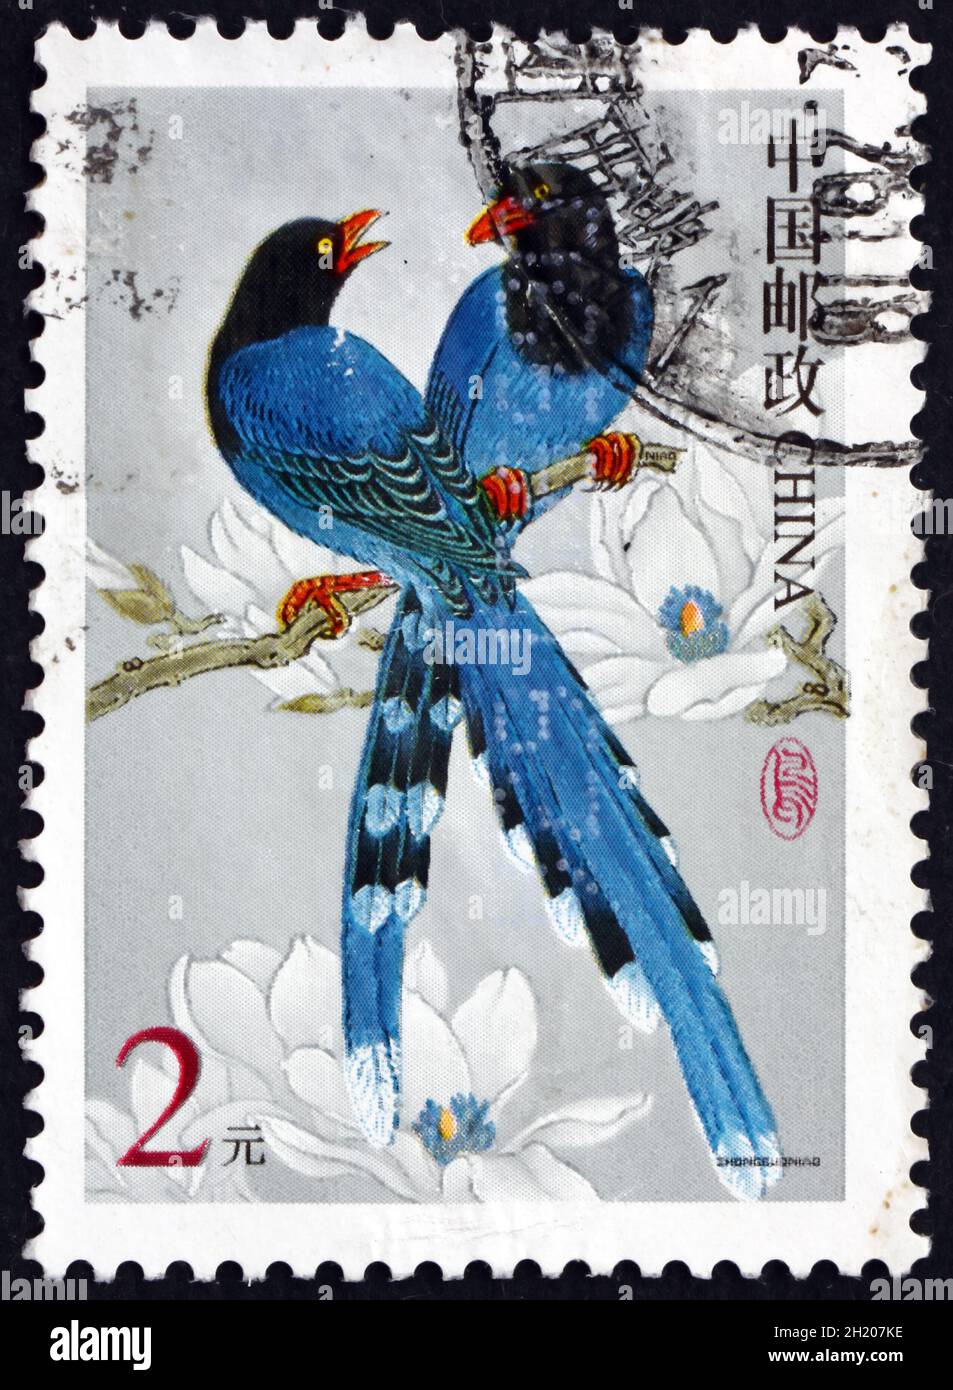 CINA, REPUBBLICA POPOLARE DI - CIRCA 2000: Un francobollo stampato in Cina mostra Taiwan maggie blu, urocissa caerulea, uccello, circa 2000 Foto Stock